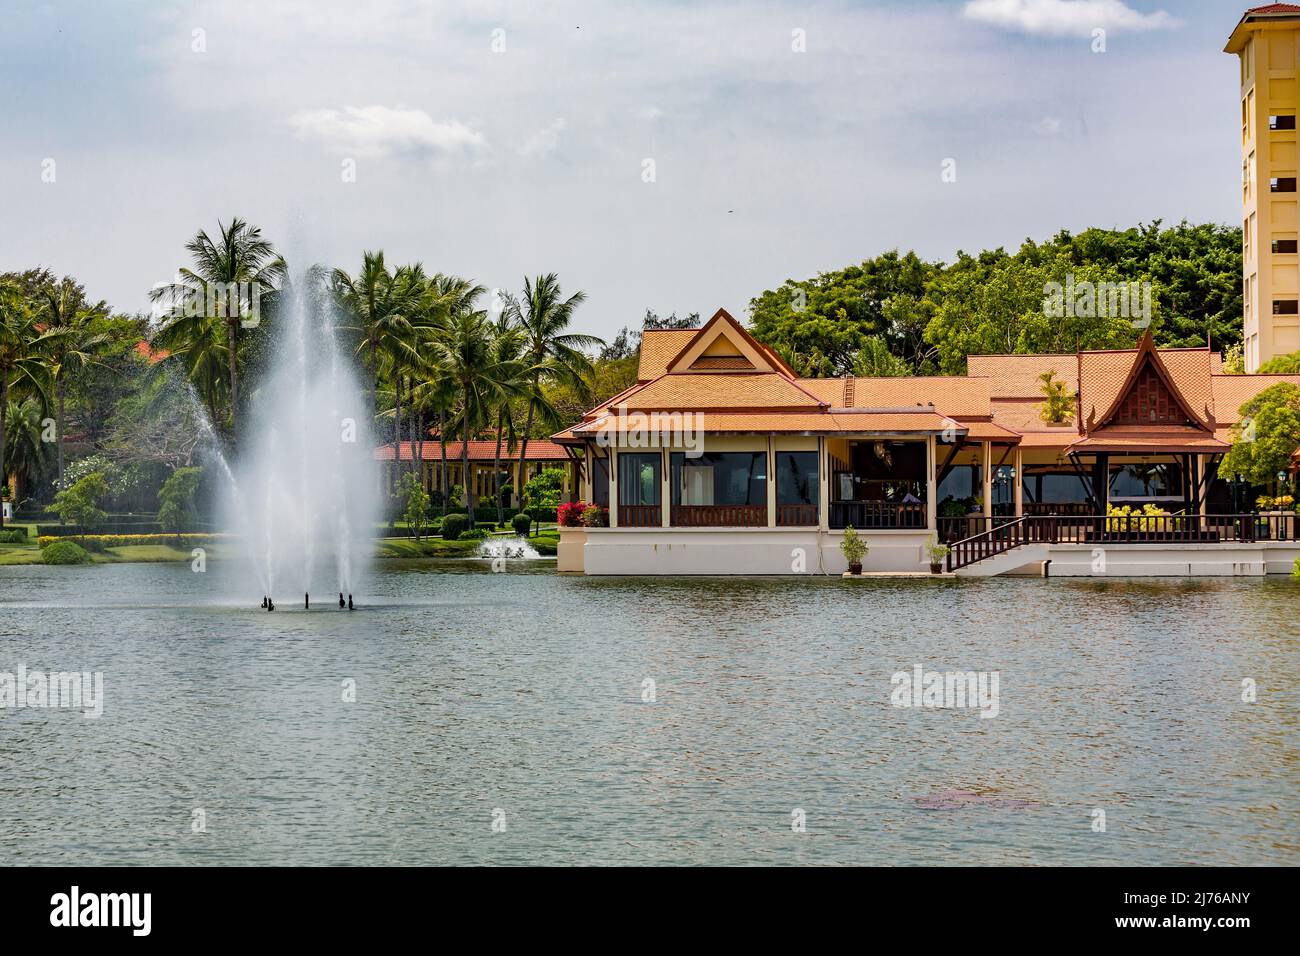 Restaurant, complexe hôtelier Dusit Thani, Hua Hin, province de Prachuap Khiri Khan, Thaïlande, Golfe de Thaïlande, Asie Banque D'Images